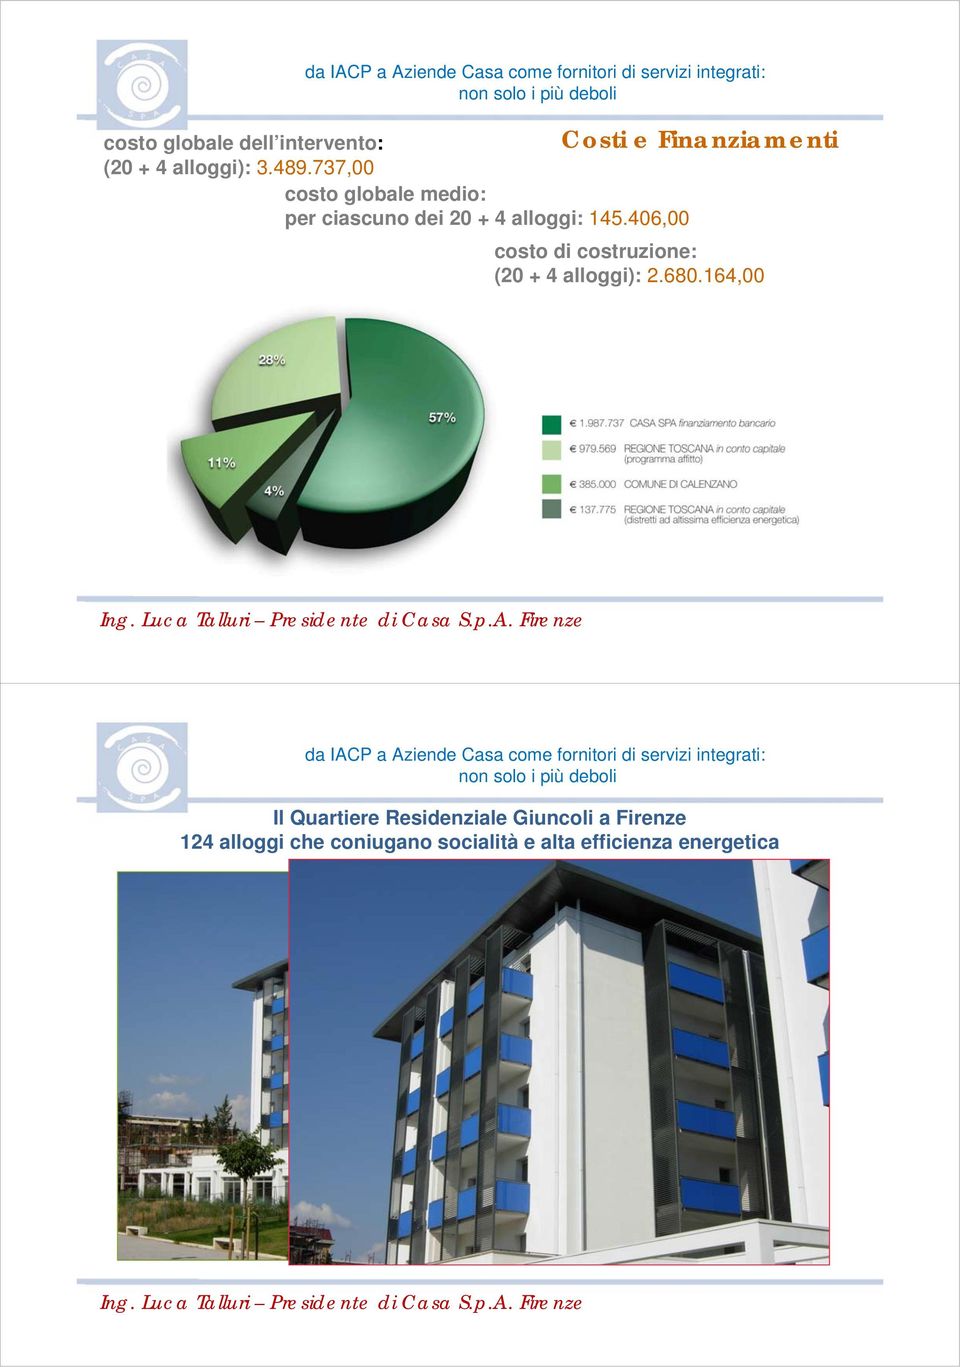 406,00 Costi e Finanziamenti costo di costruzione: (20 + 4 alloggi): 2.680.